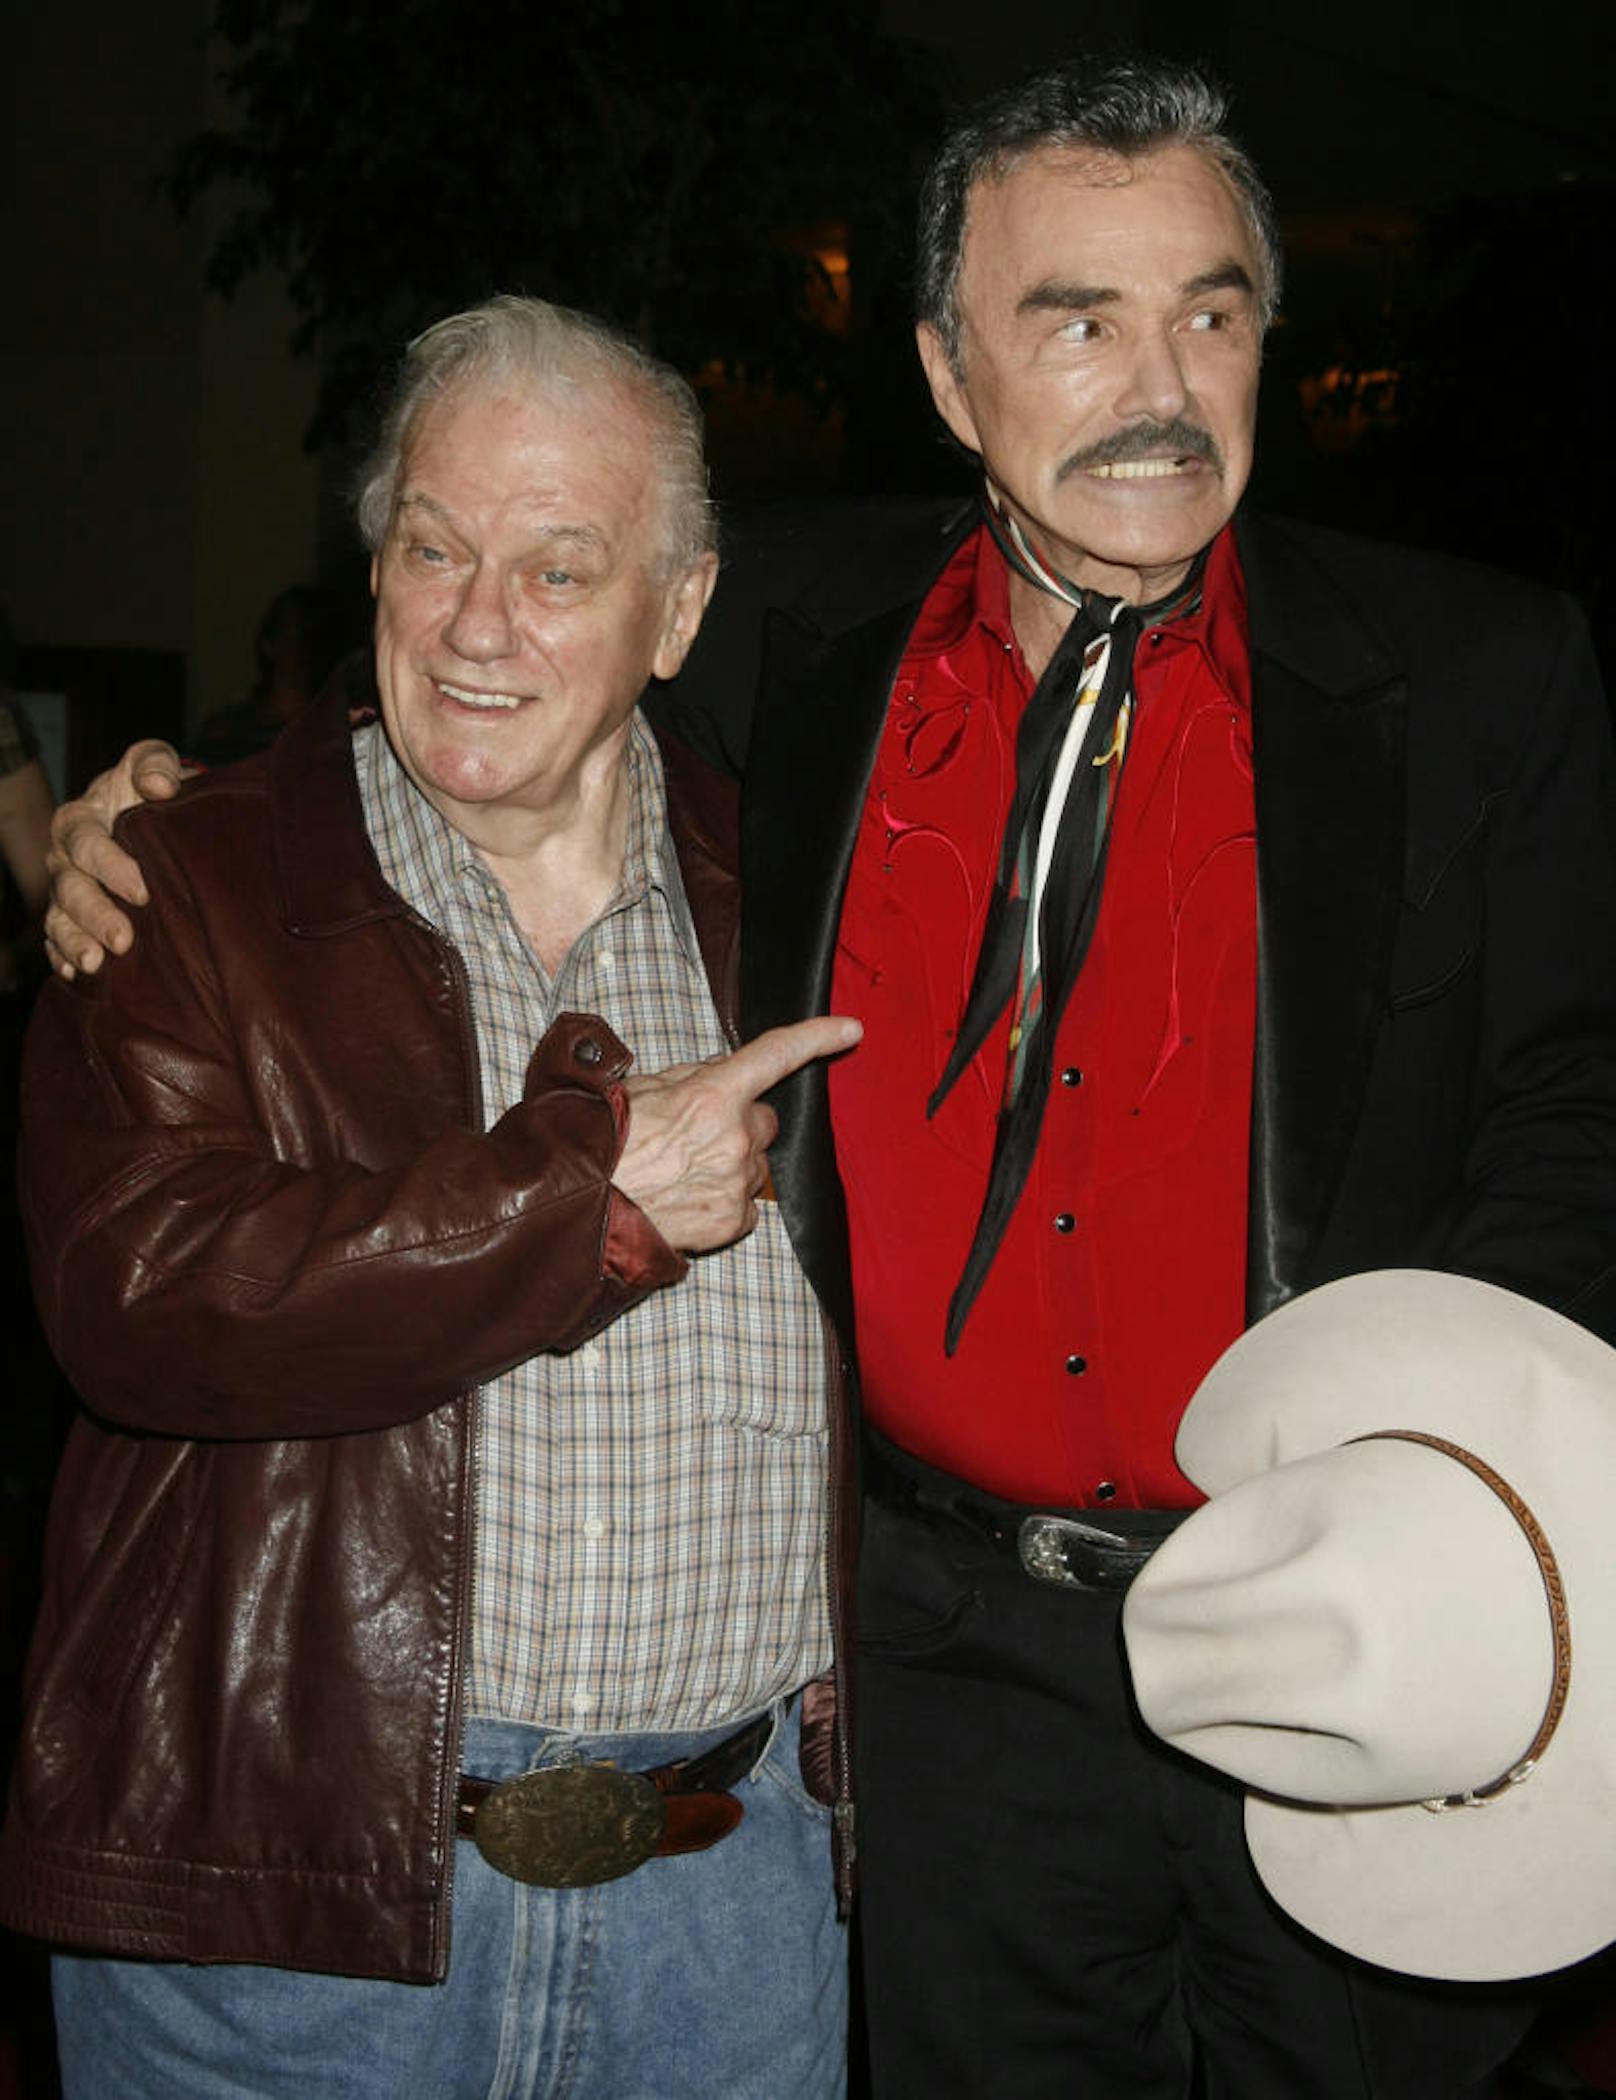 Schauspieler Charles Durning (L) mit Burt Reynolds. Sie spielten gemeinsam im Film "The Best Little Whorehouse in Texas".